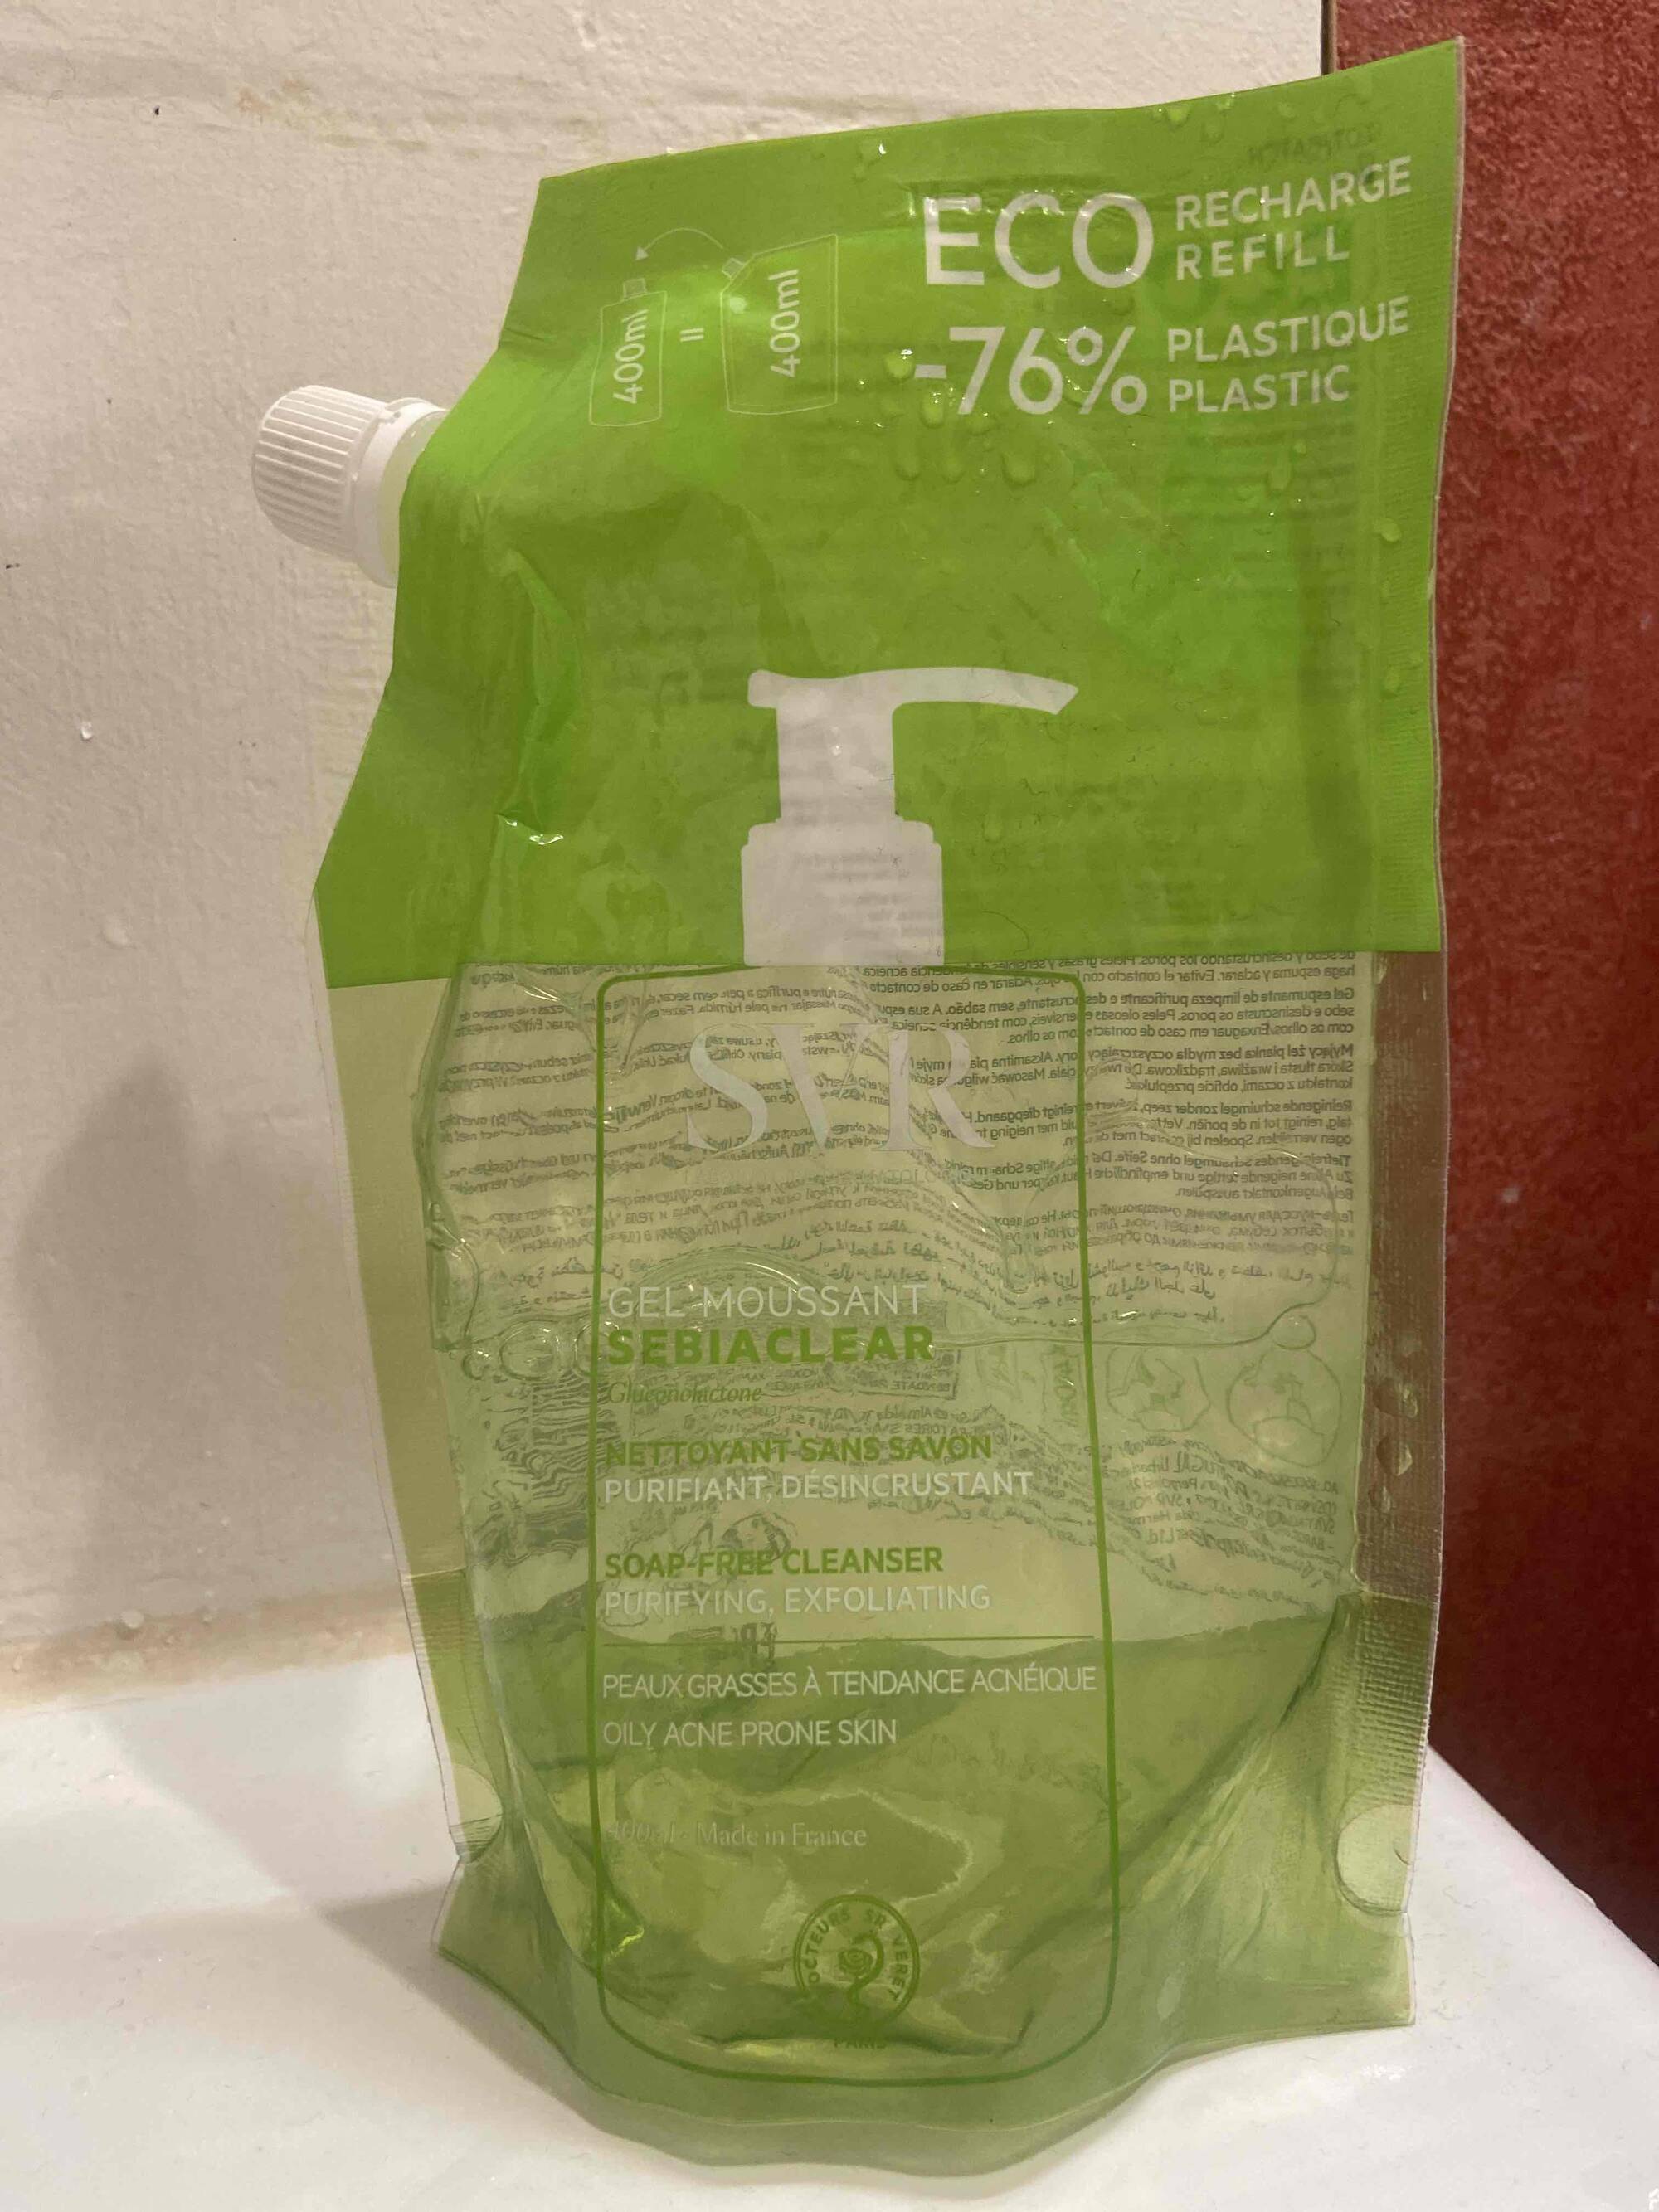 SVR - Sebiaclear - Gel moussant nettoyant sans savon